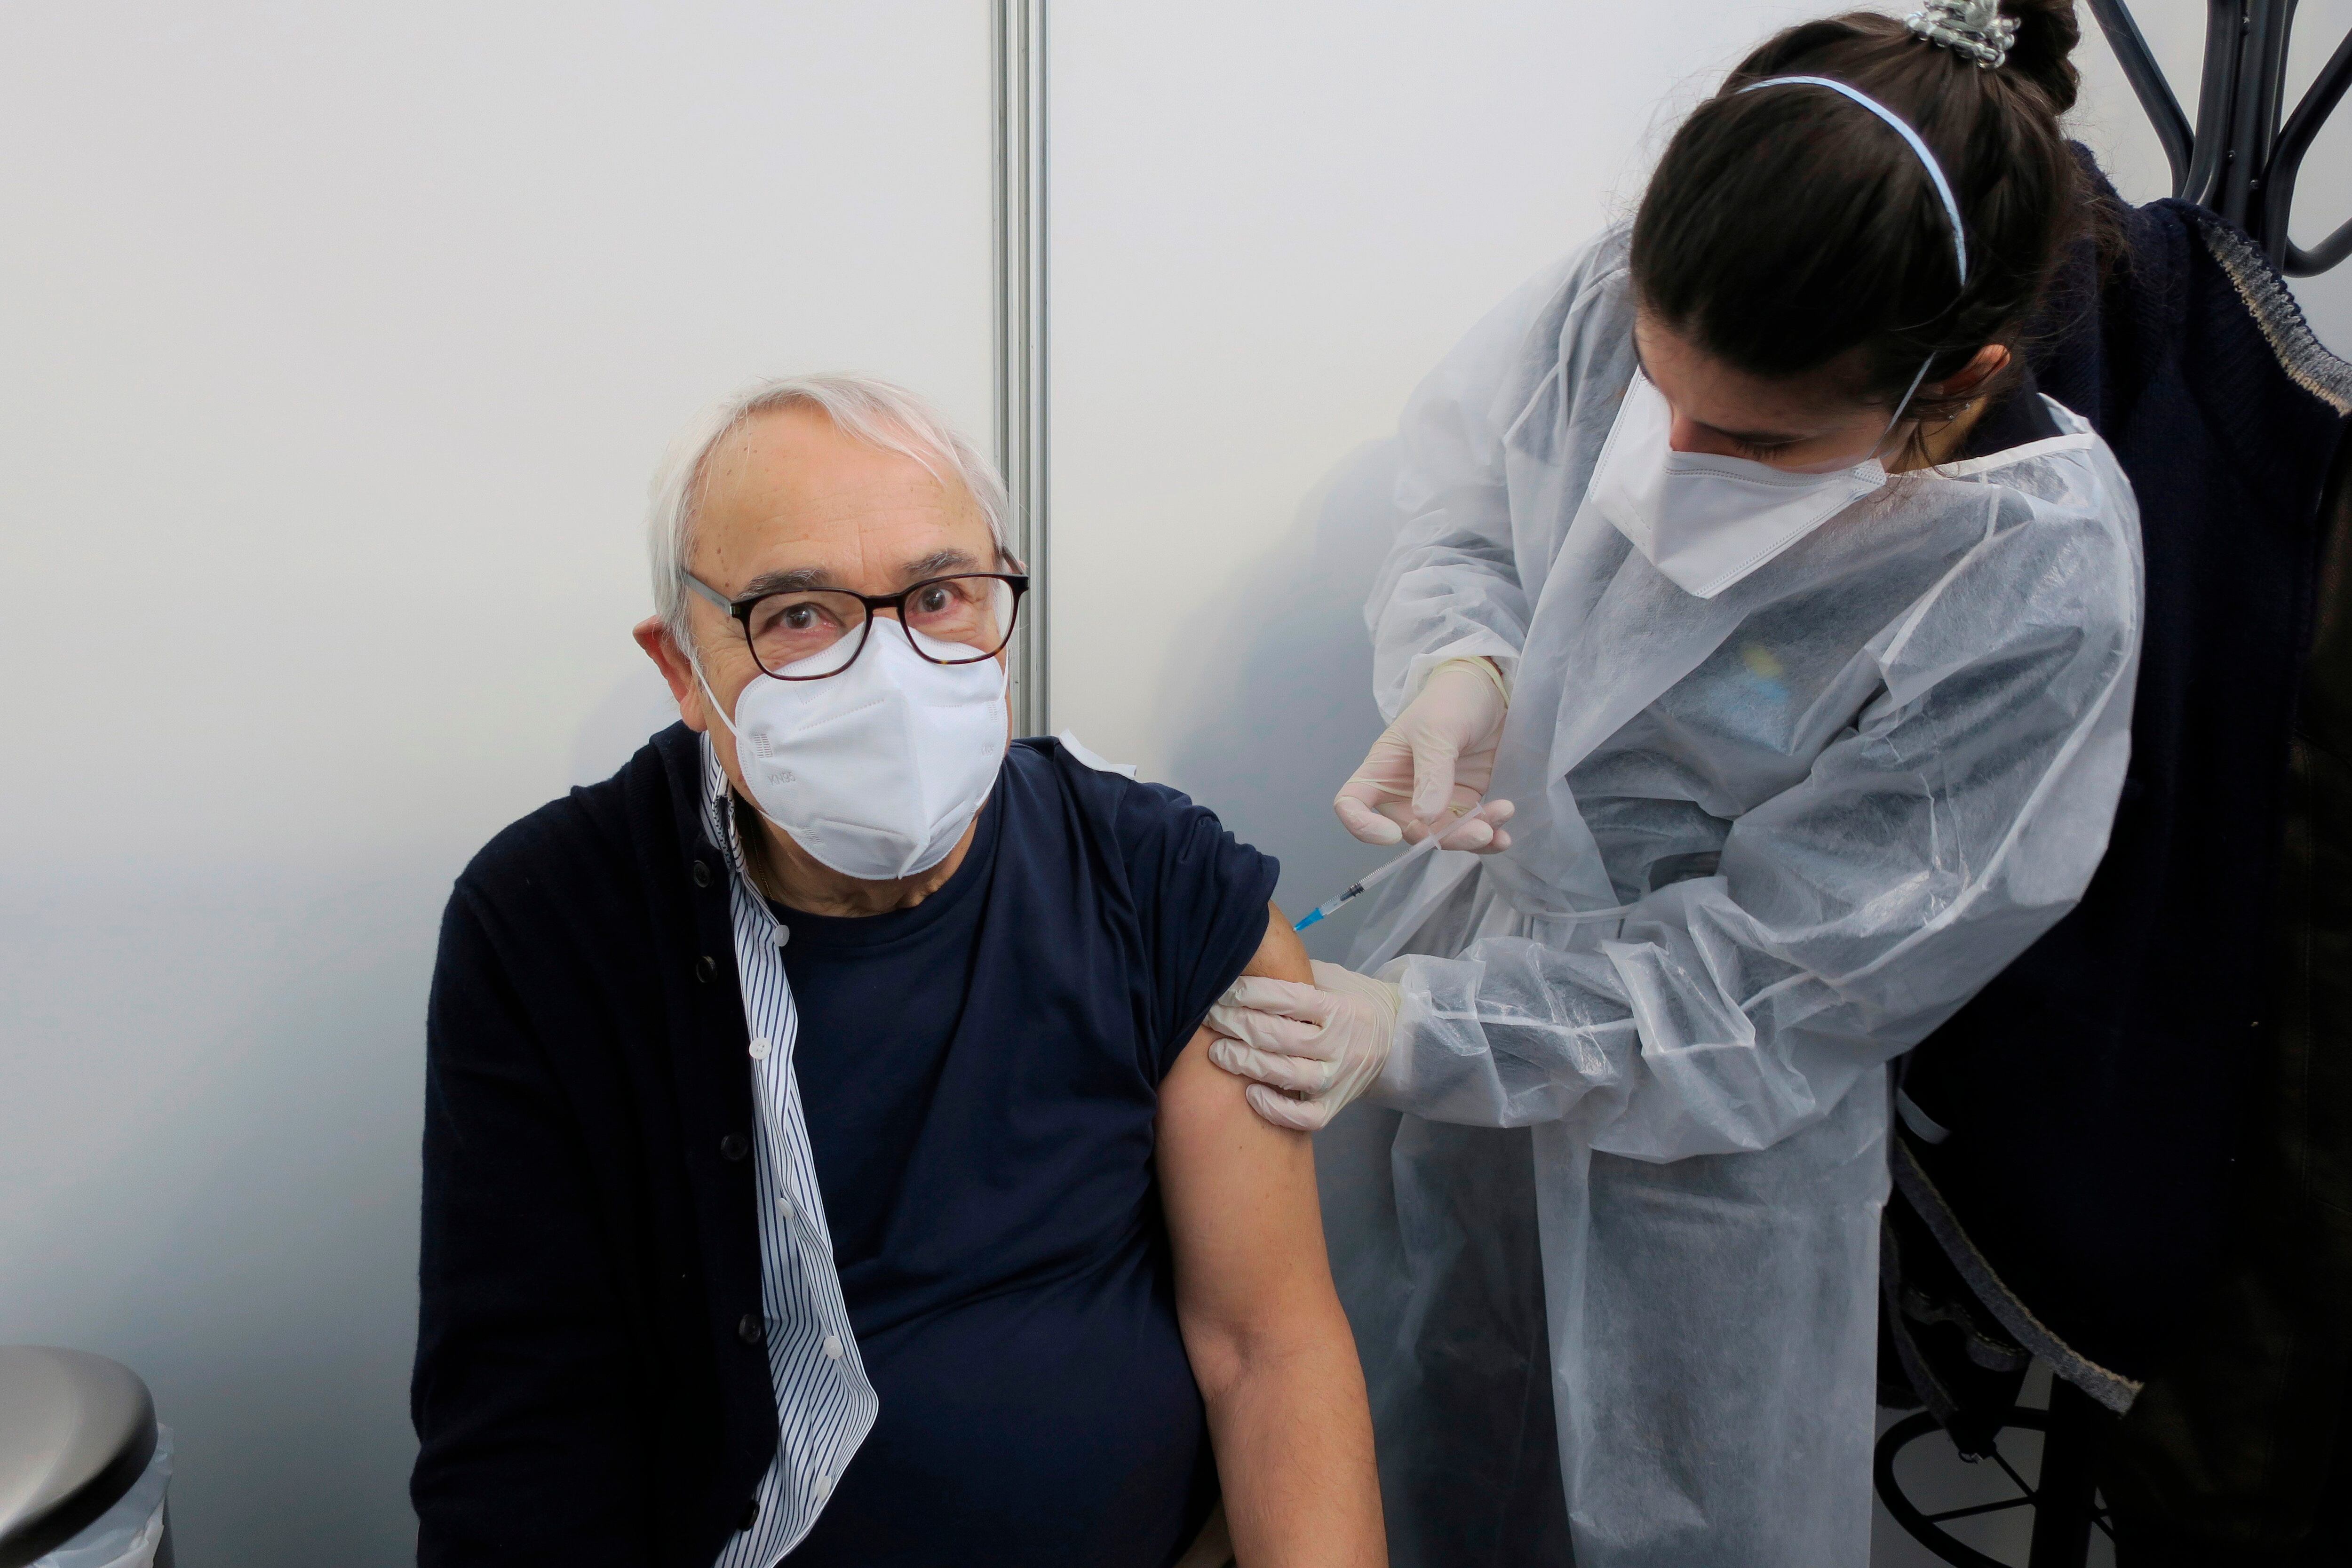 Una persona recibe una vacuna en el pabellón deportivo Carlos Queiroz en Oeiras, afueras de Lisboa, en una fotografía de archivo. EFE/Andrea Caballero